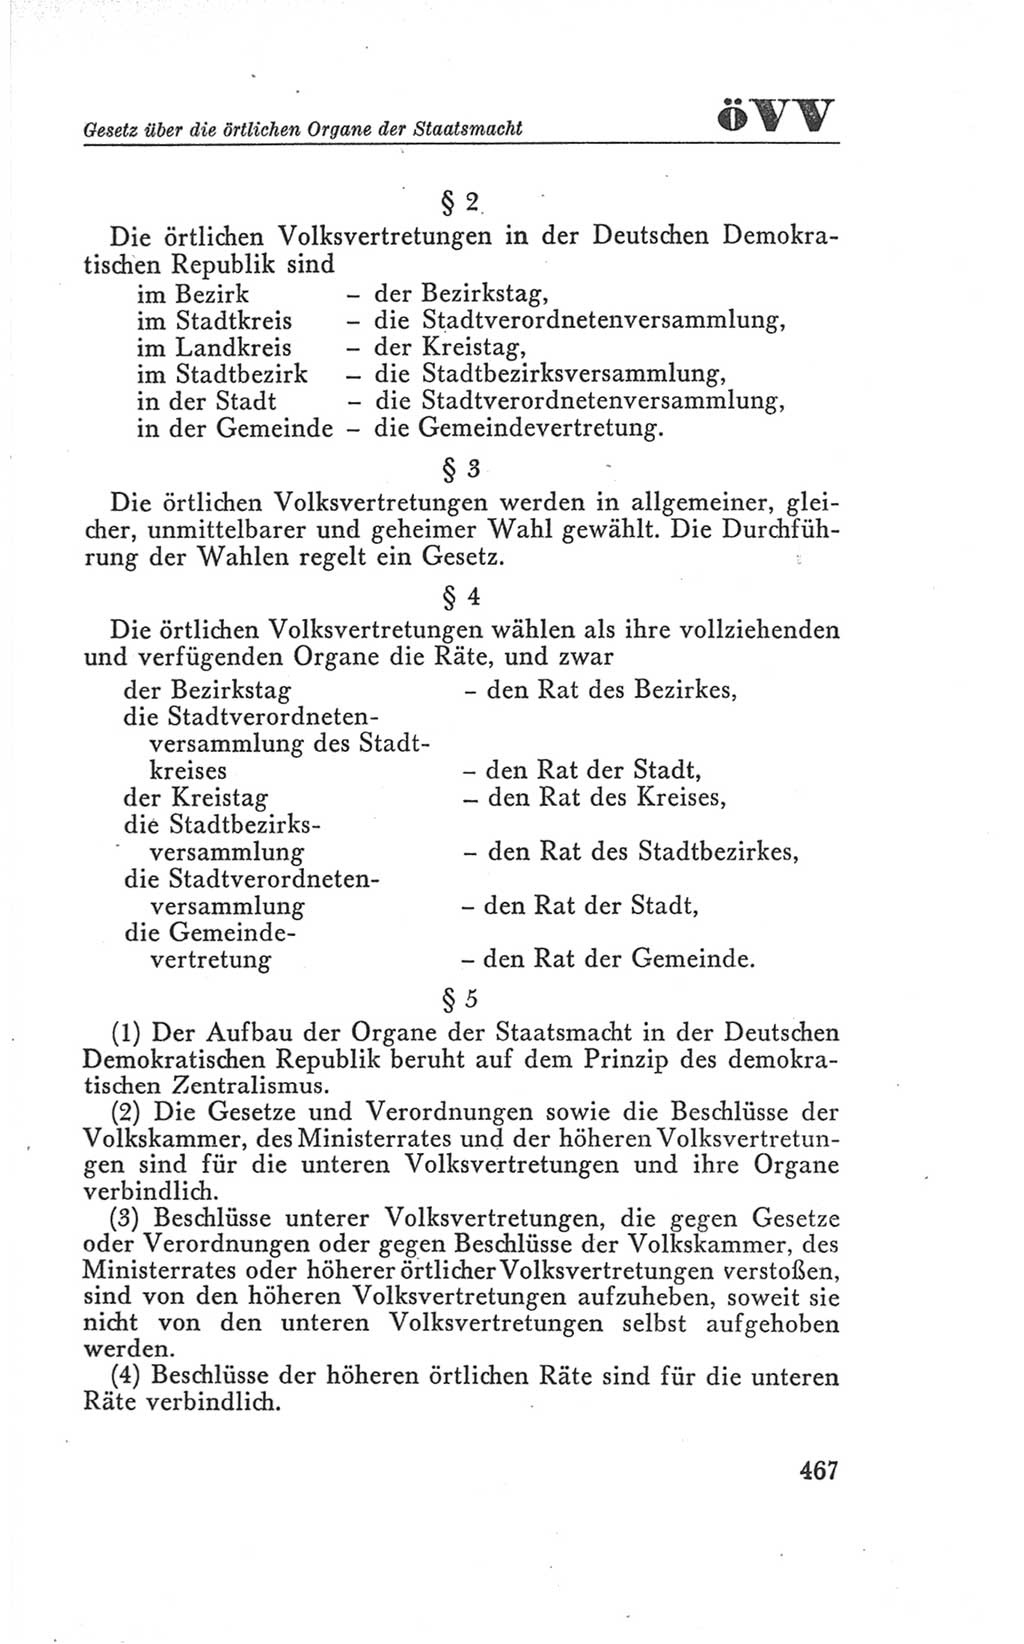 Handbuch der Volkskammer (VK) der Deutschen Demokratischen Republik (DDR), 3. Wahlperiode 1958-1963, Seite 467 (Hdb. VK. DDR 3. WP. 1958-1963, S. 467)